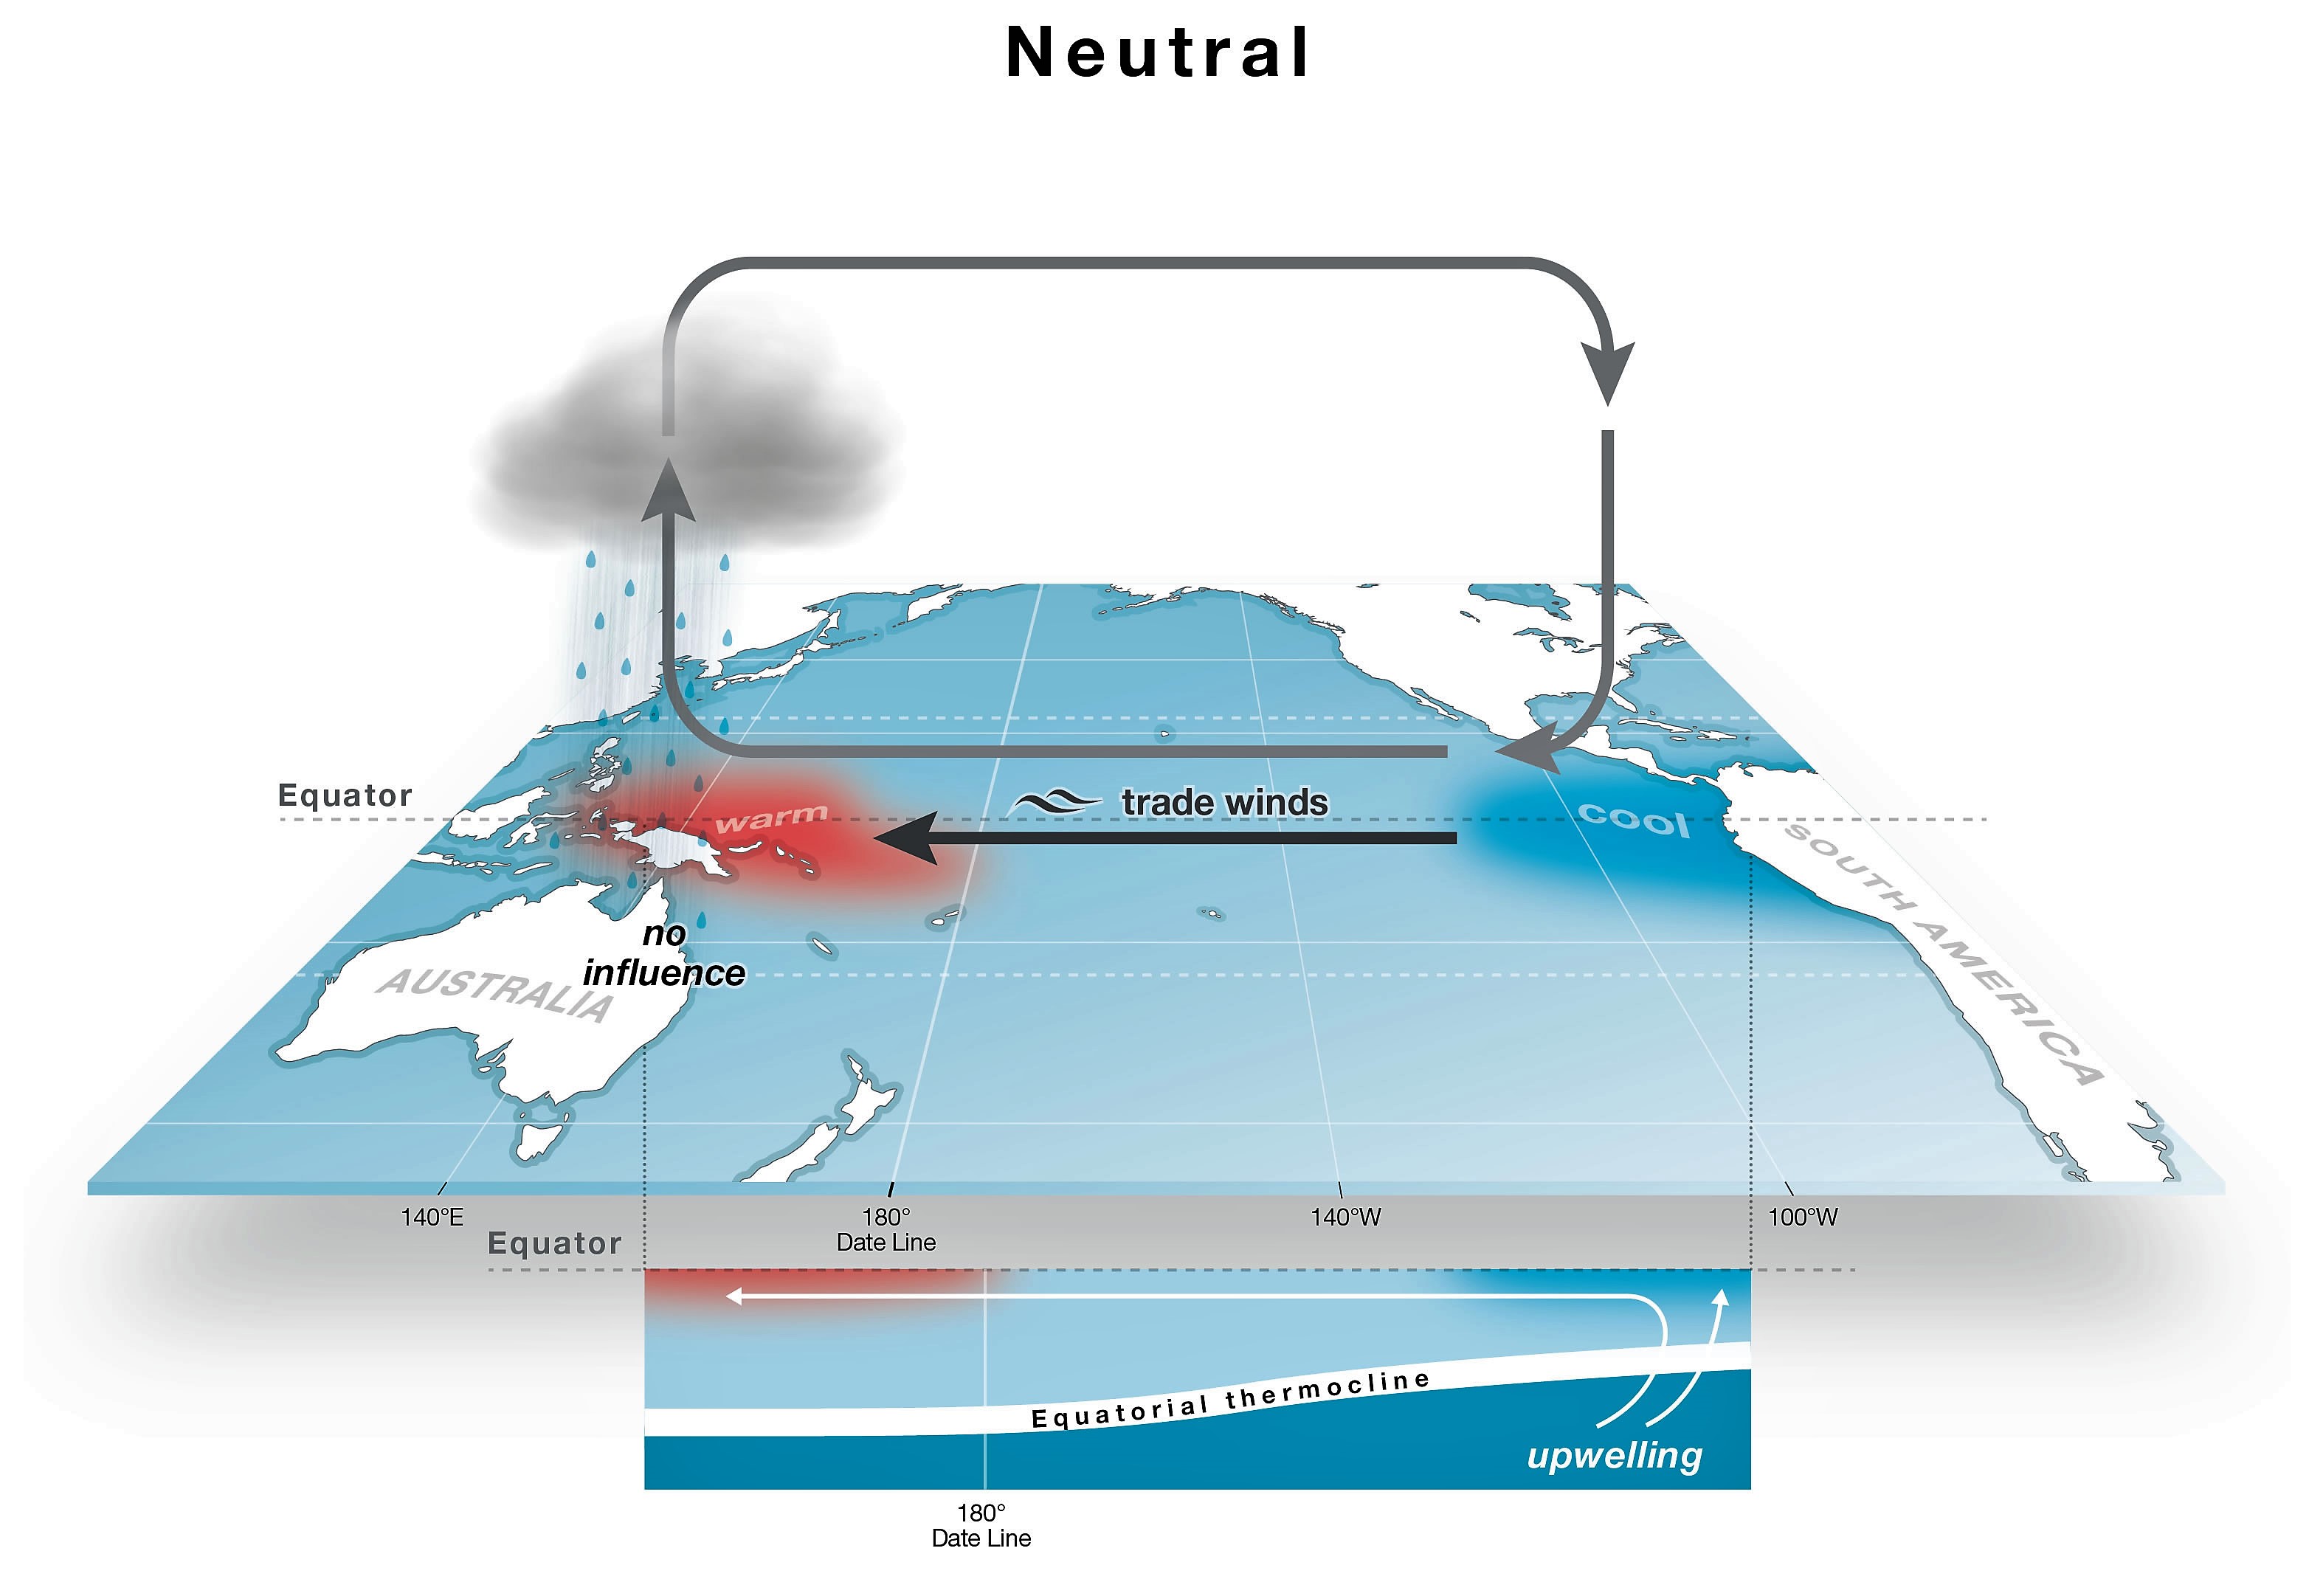 Zum Vergleich der Pazifik während der Neutralphase